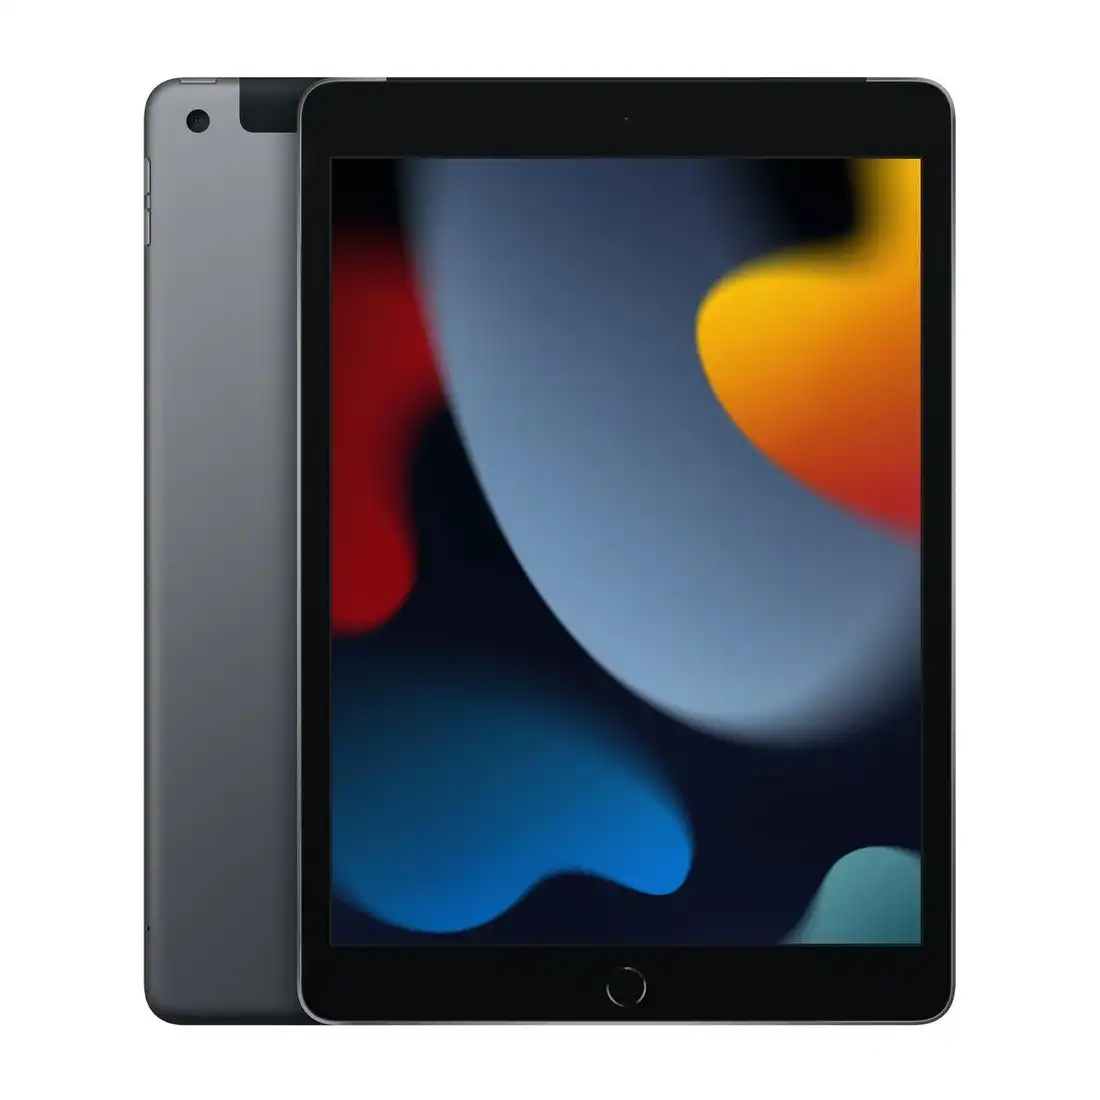 Apple iPad Wi-Fi + Cellular 64GB (9th Gen, MK473X/A) - Space Grey